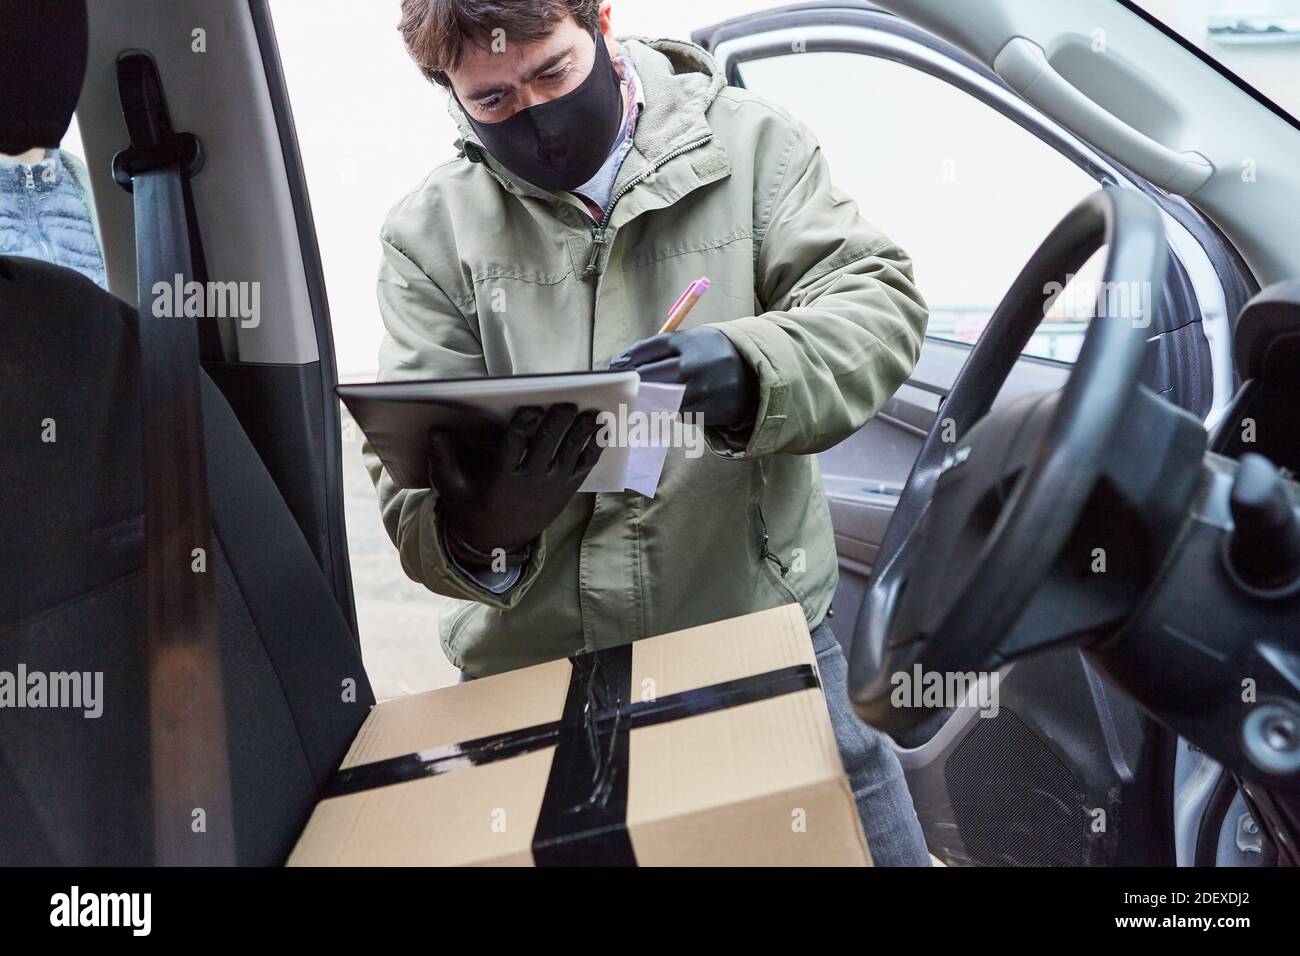 Personne chargée de la livraison de colis avec colis et liste de contrôle sur la voiture Avec masque facial en raison de Covid-19 Banque D'Images